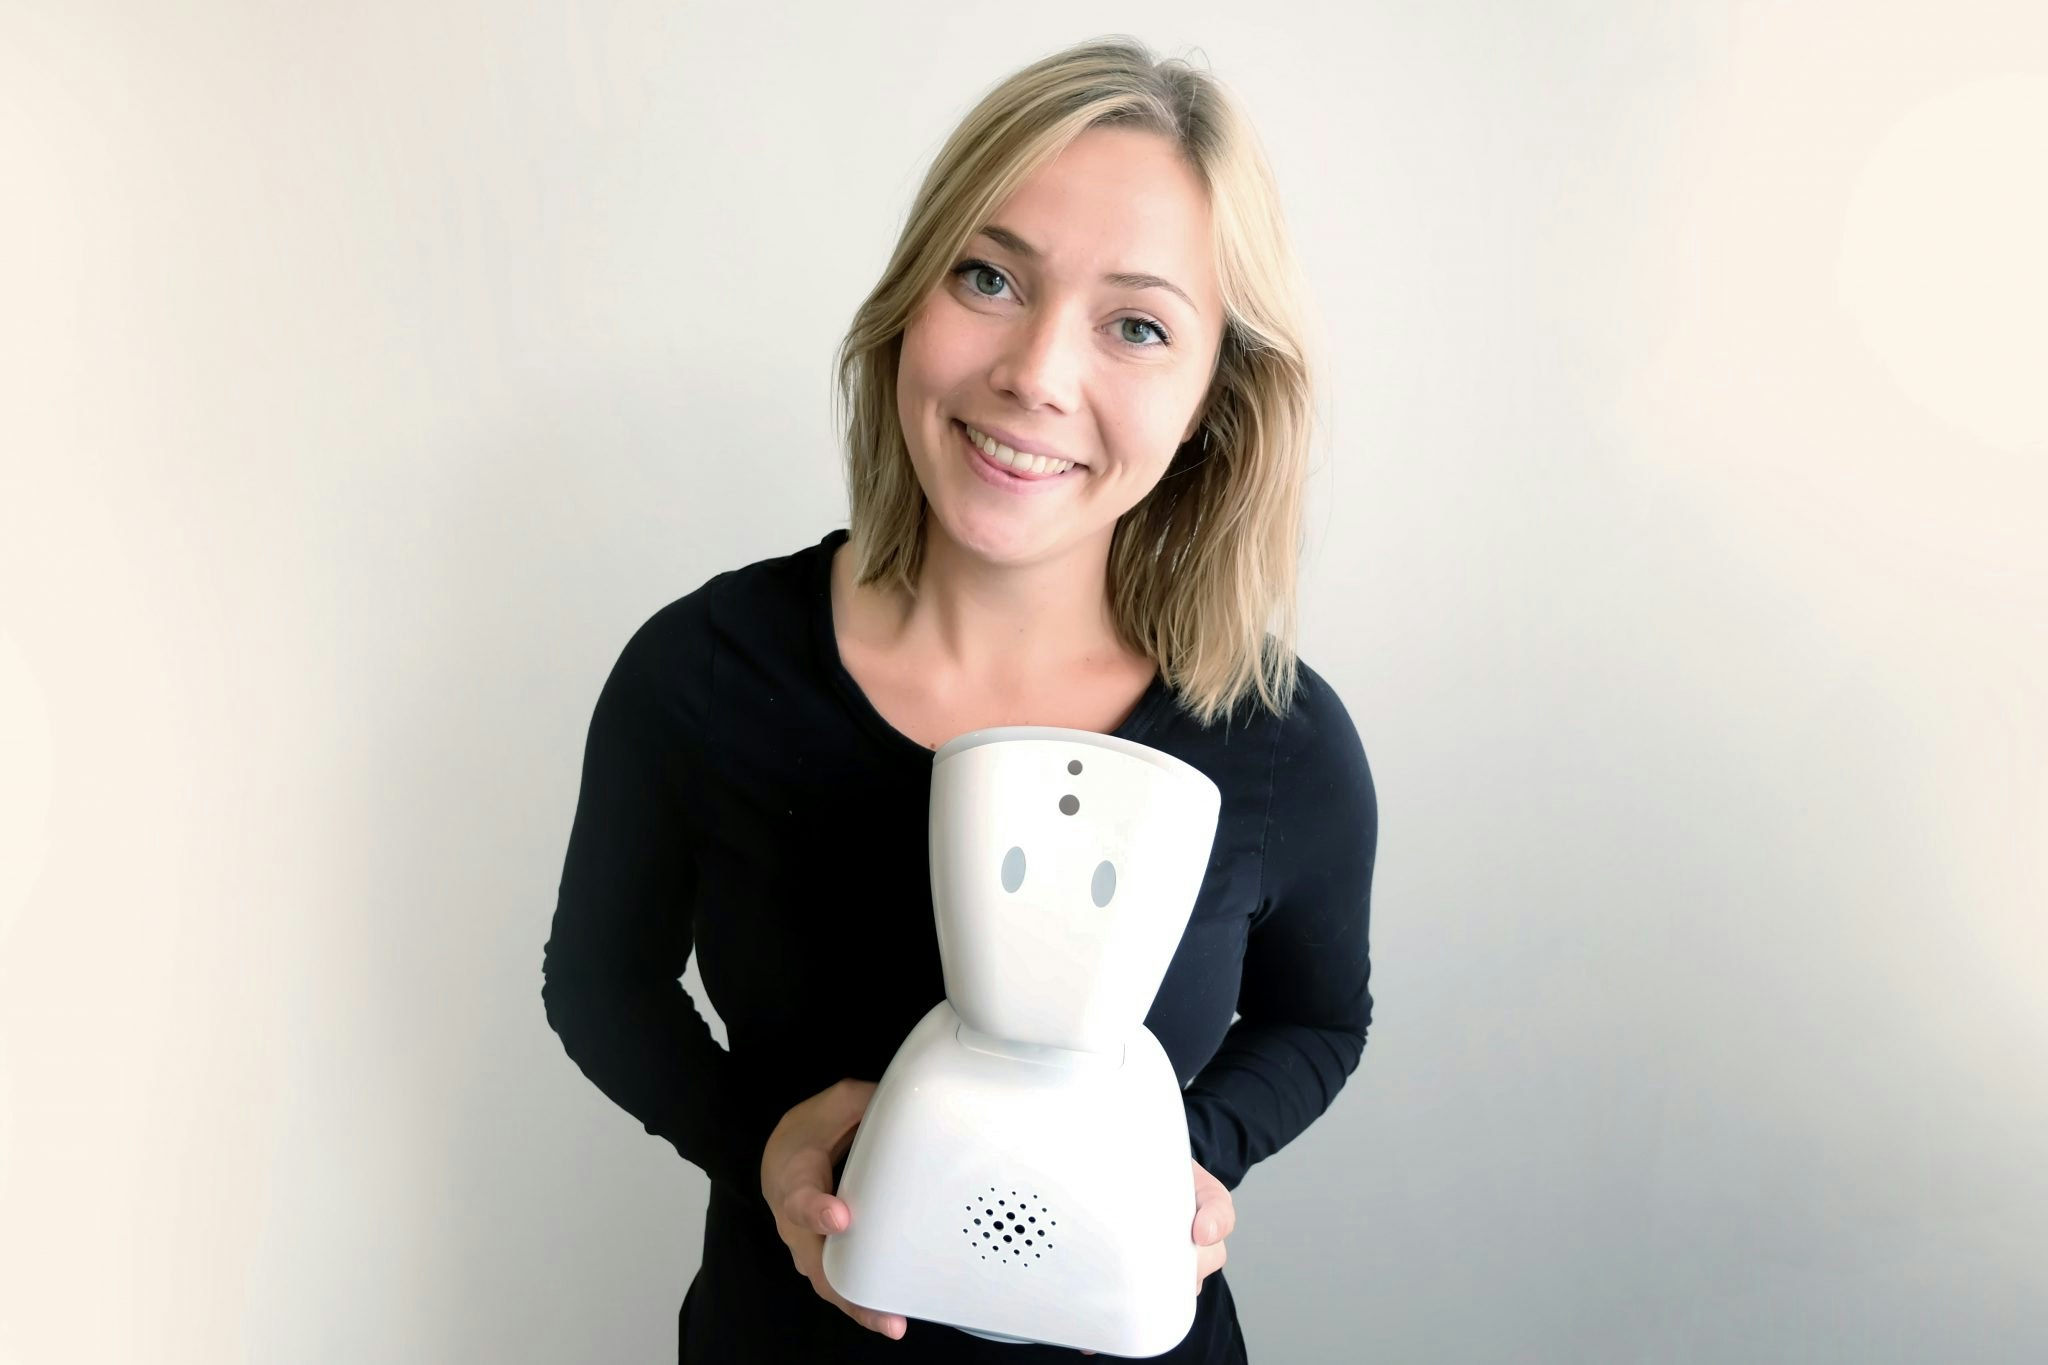 Karen Dolva with No Isolation's AV1 robot.